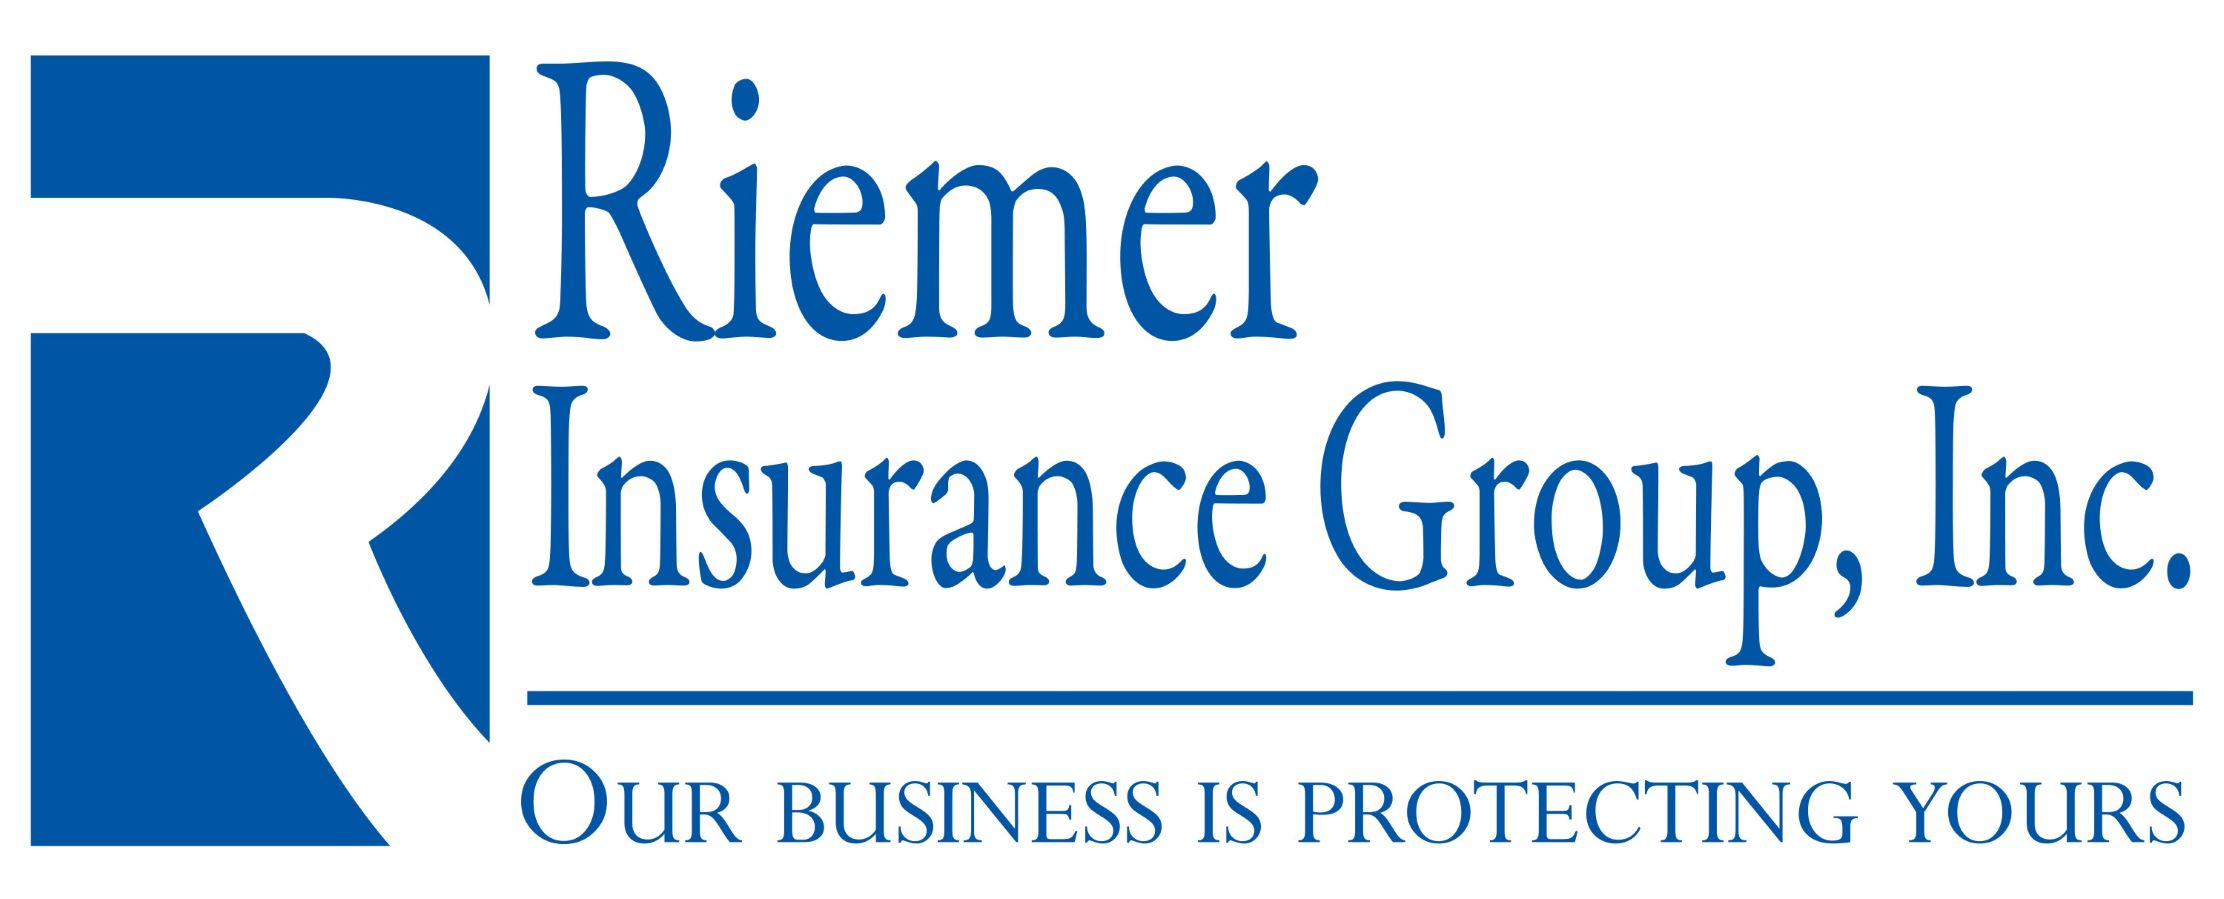 Riemer Insurance Group, Inc.